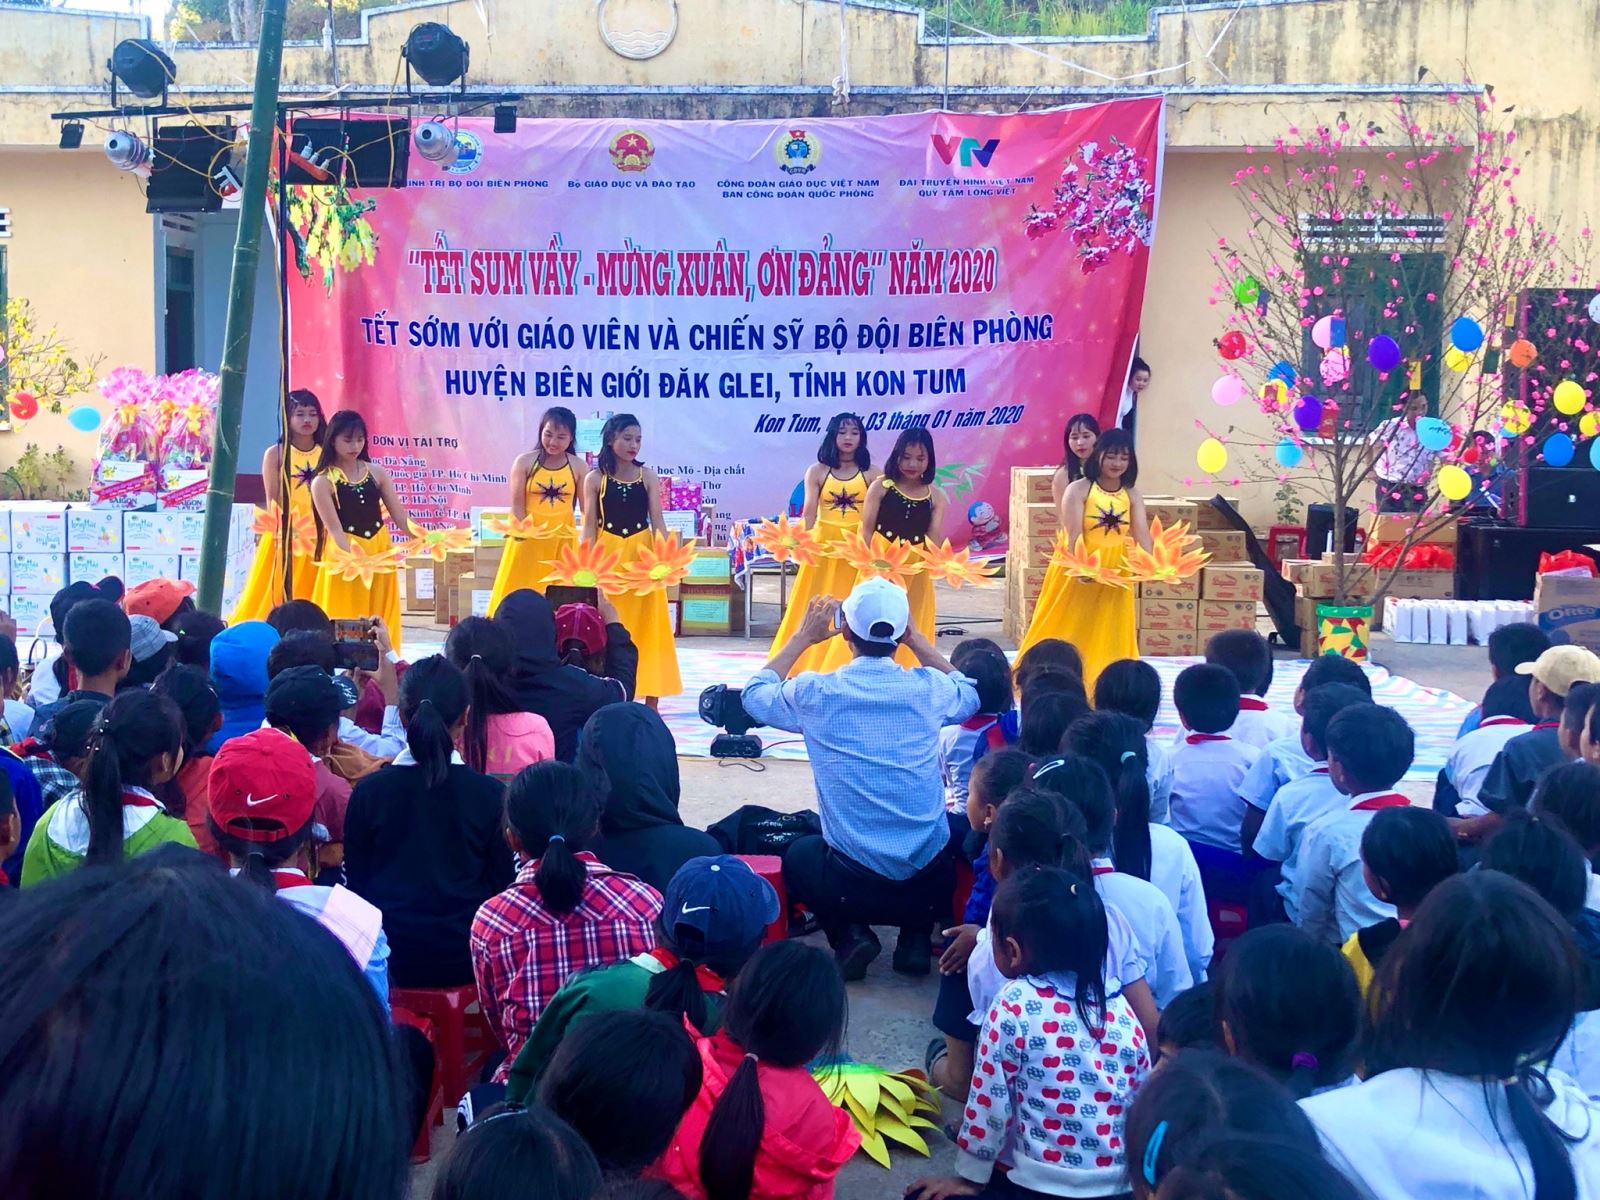 Công đoàn Giáo dục Việt Nam phối hợp tổ chức chương trình  "Tết sum vầy" năm 2020 tại huyện ĐăkGlei, tỉnh Kon Tum